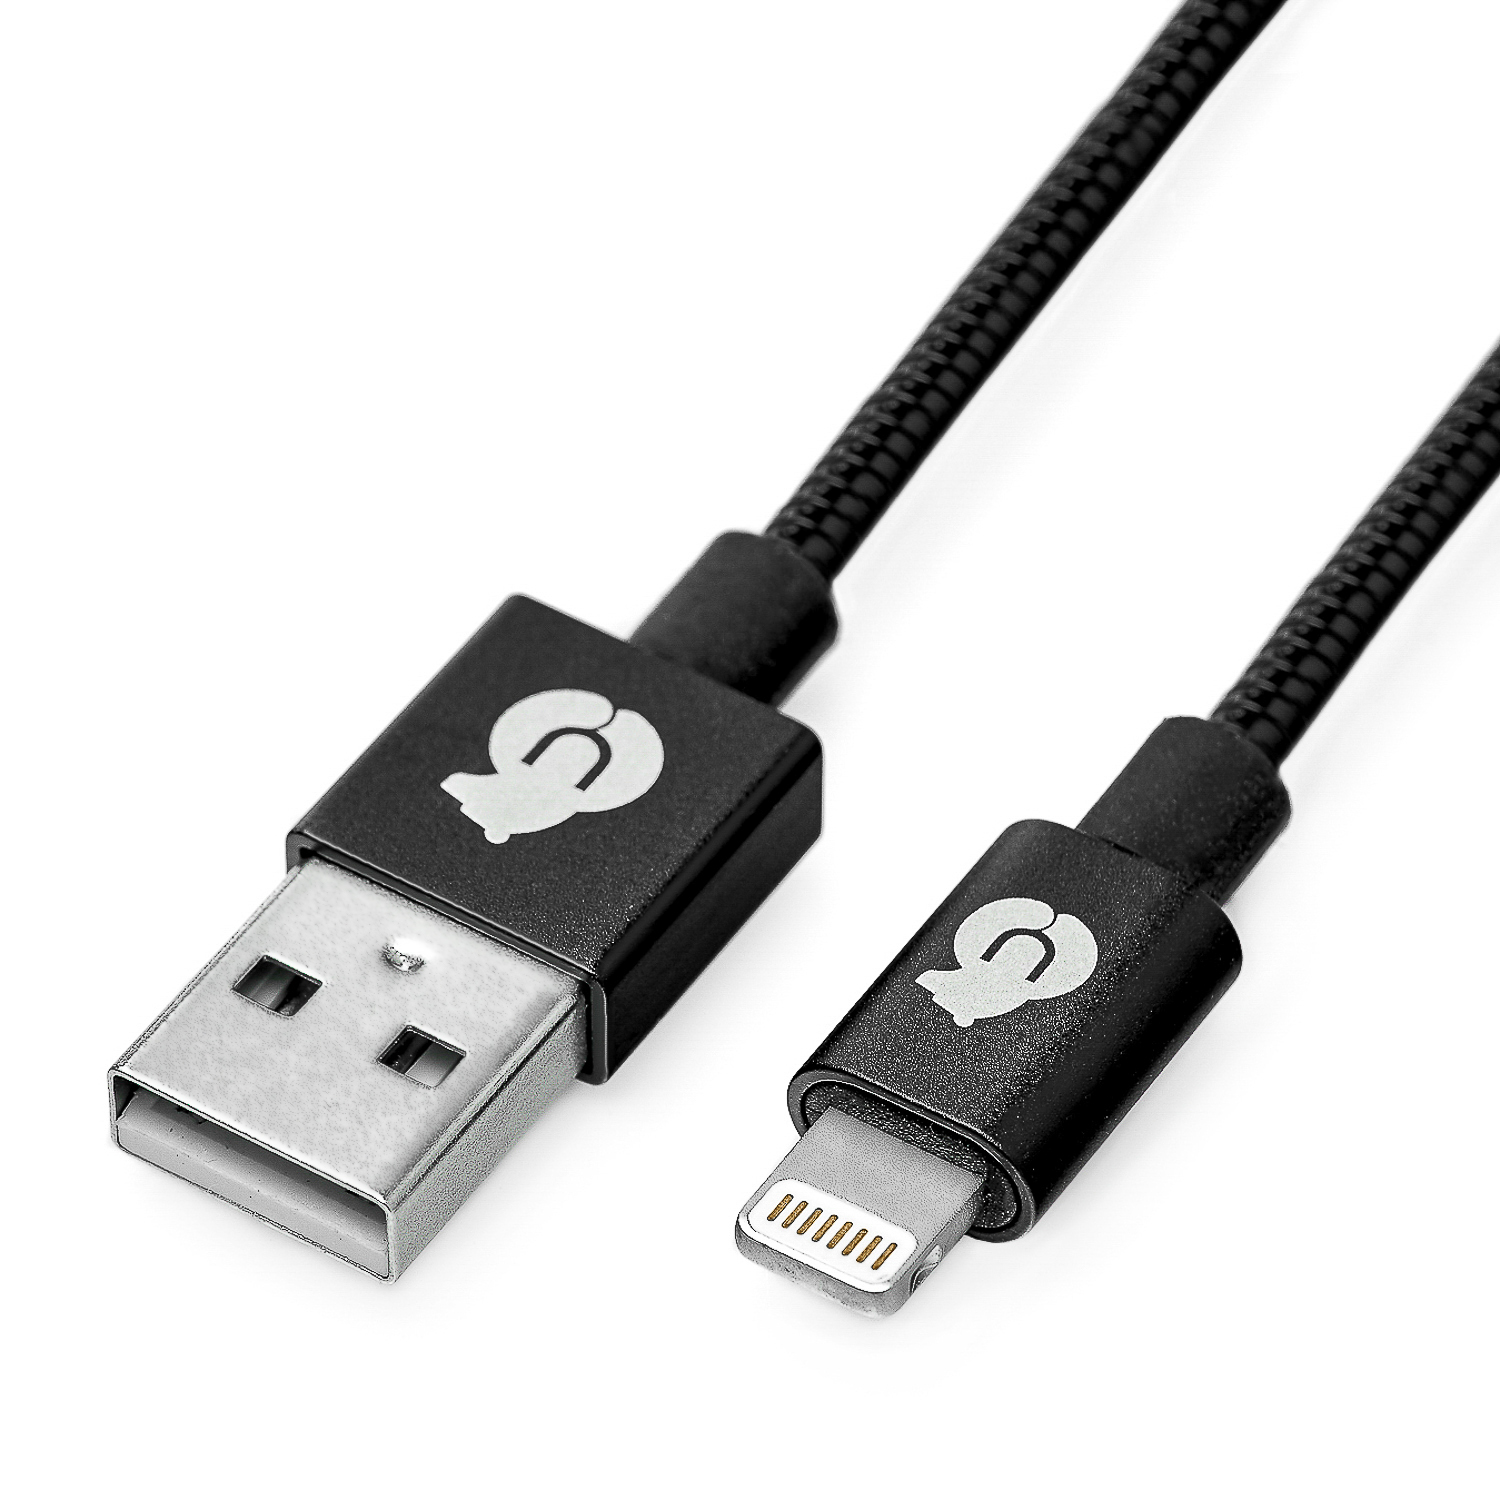 Зарядный кабель FORCE MFI Lightning USB Kevlar Cable (Metal), чёрный